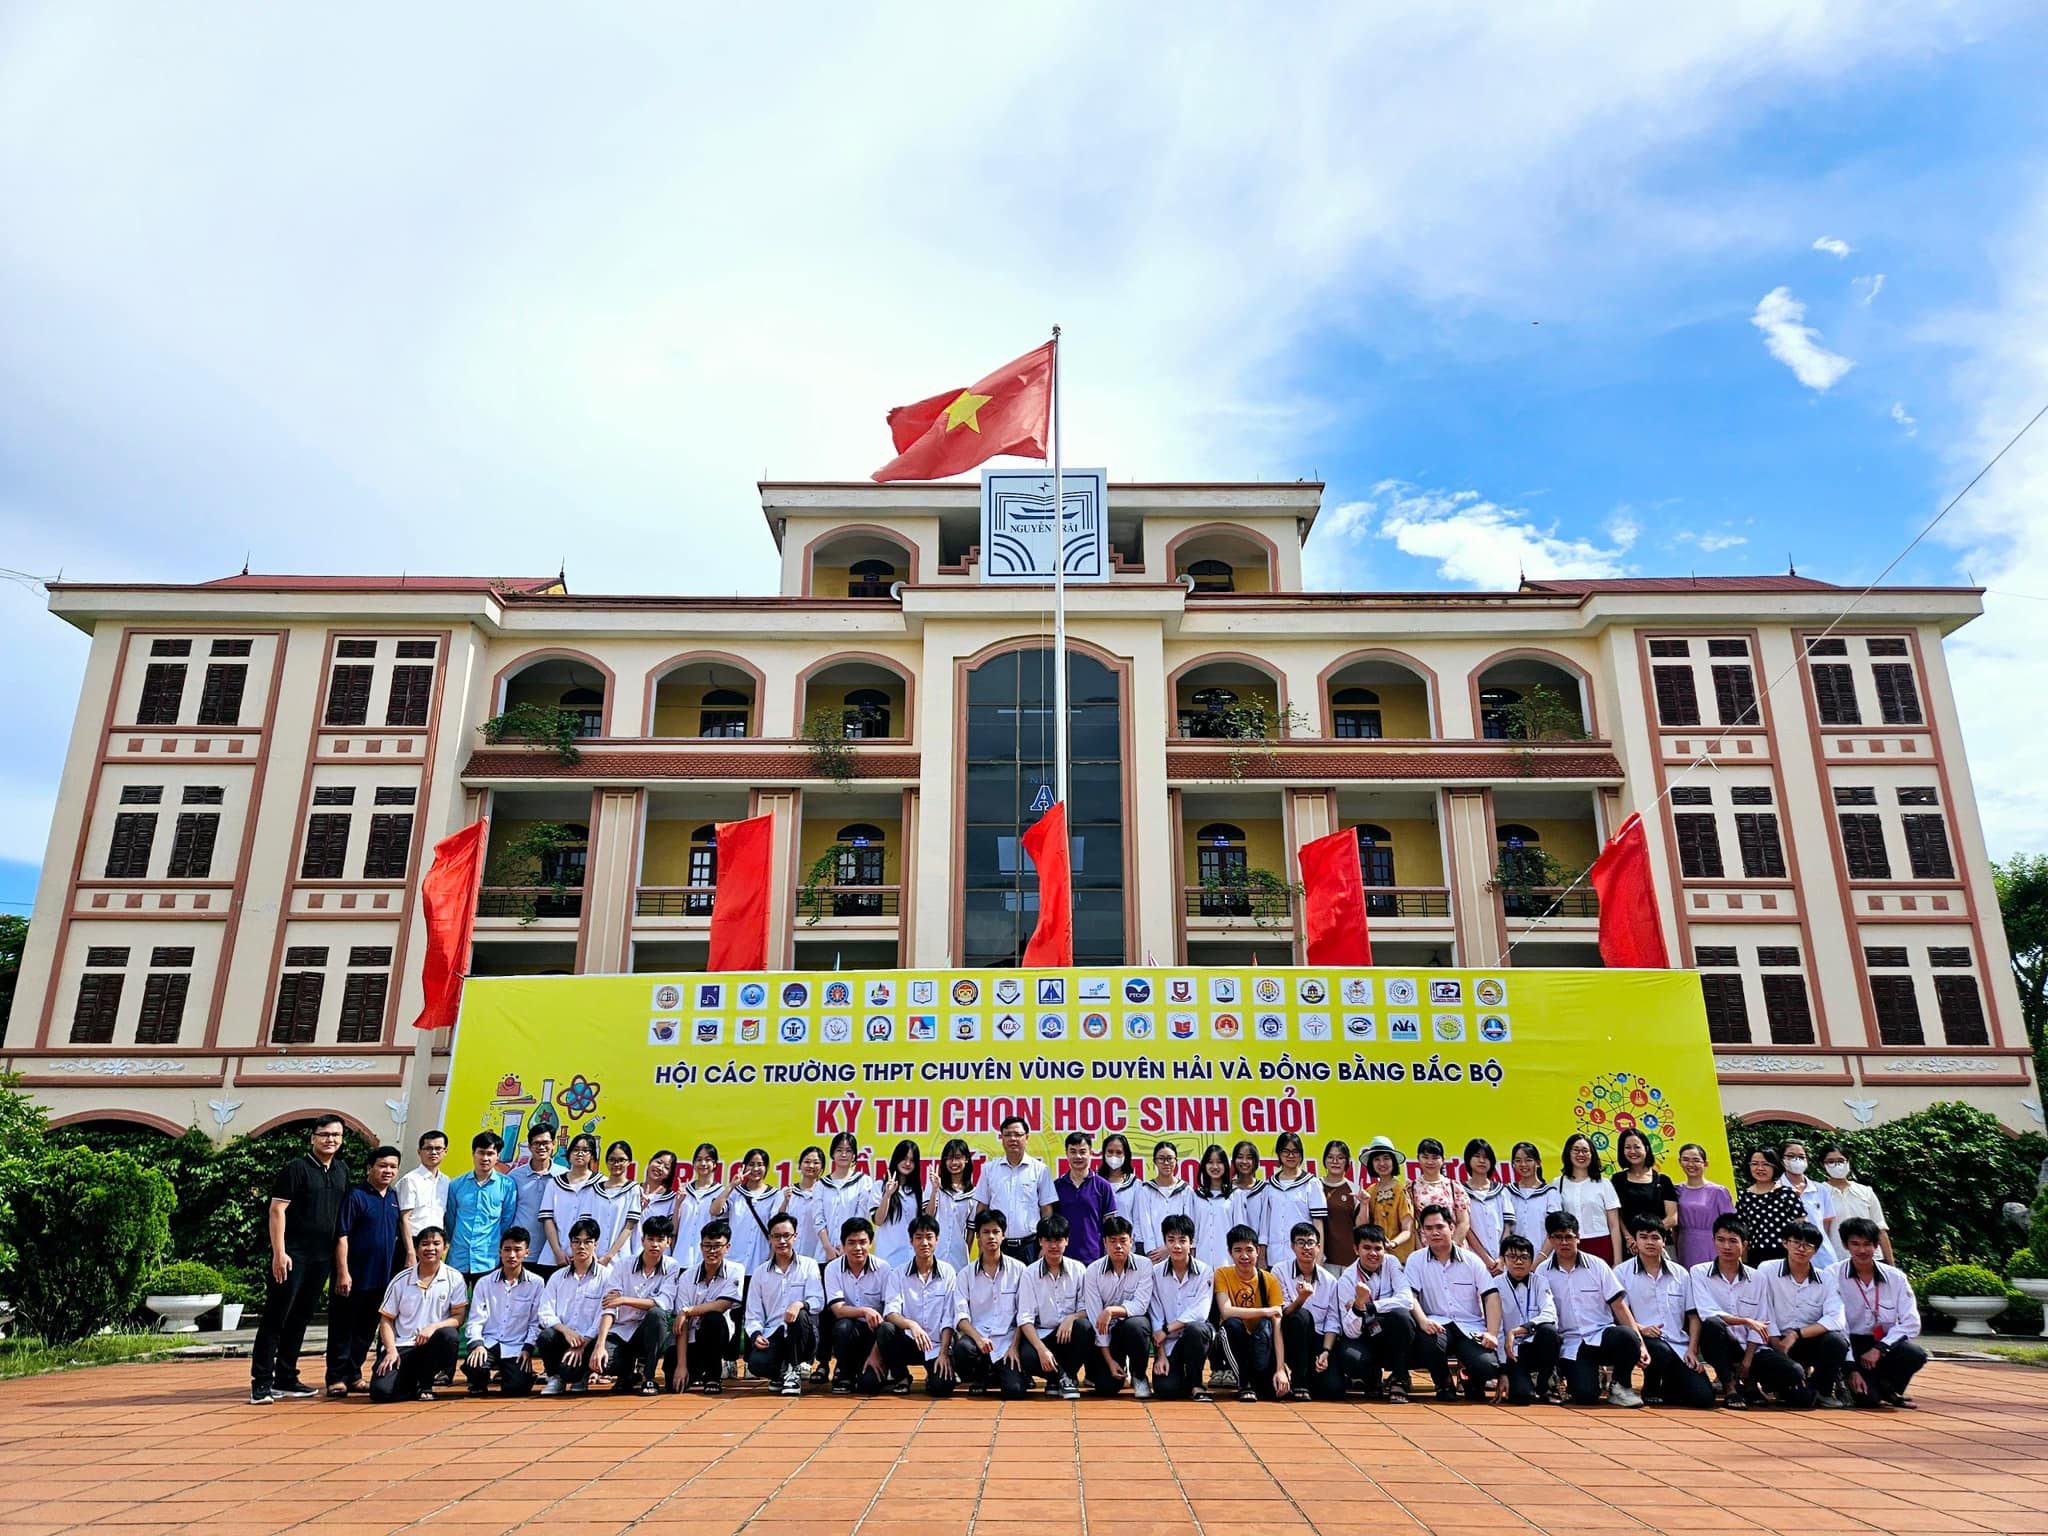 65 học sinh trường THPT chuyên Lê Hồng Phong, Nam Định đoạt giải trong kỳ thi chọn HSG các trường THPT chuyên khu vực DH&ĐBBB lần thứ XV